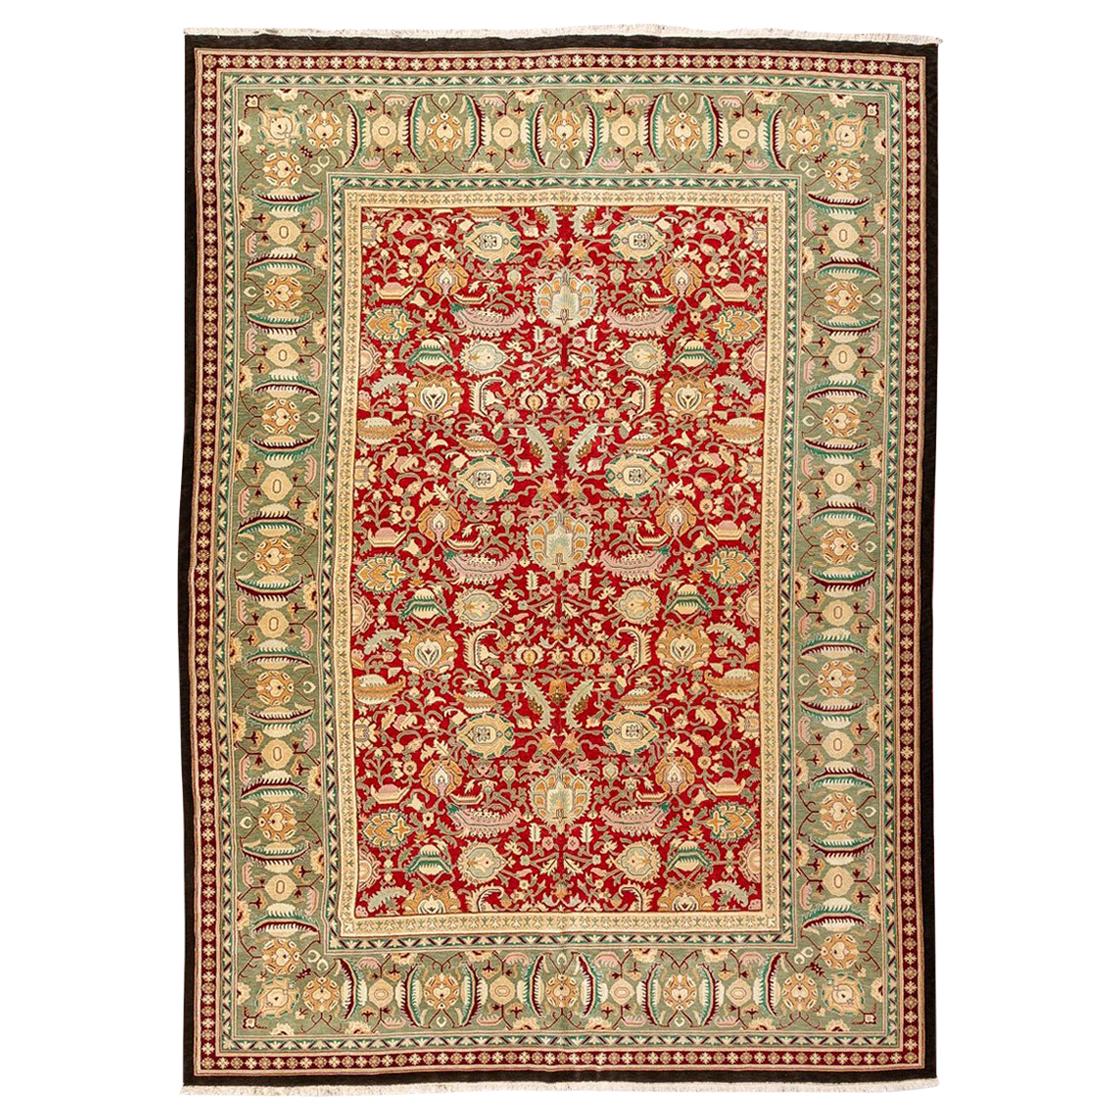 Klassischer klassischer Teppich Agra aus Palmen und ineinander verschlungenen Blumen aus Wolle, handgefertigt